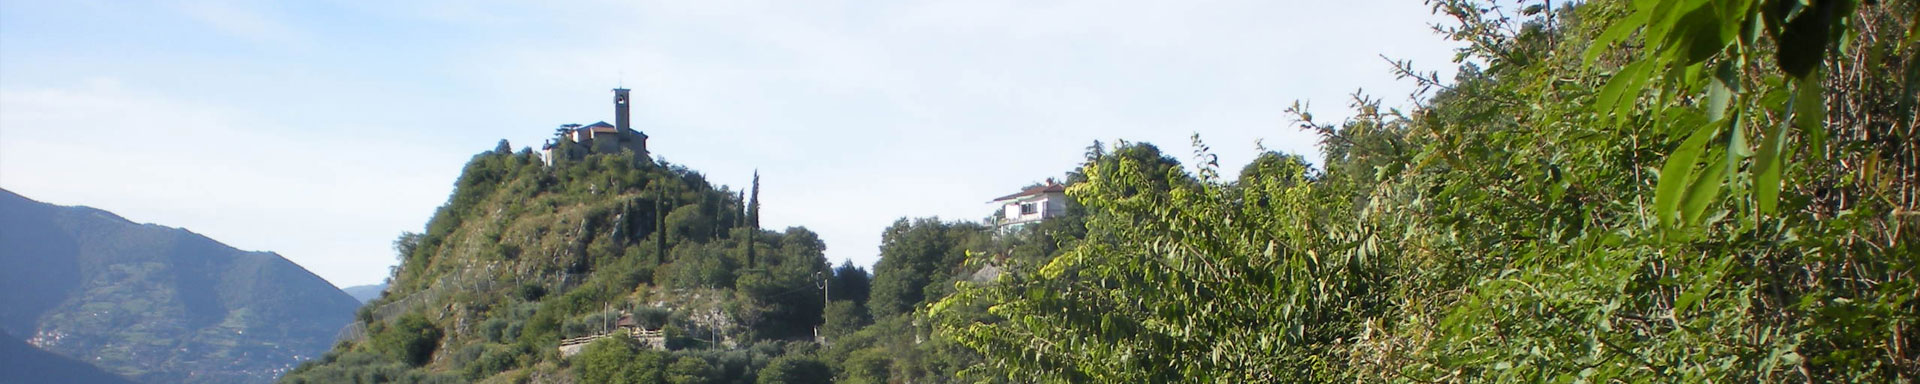 Veduta della Chiesa di San Pietro situata su un colle accessibile dalla frazione di Pregasso